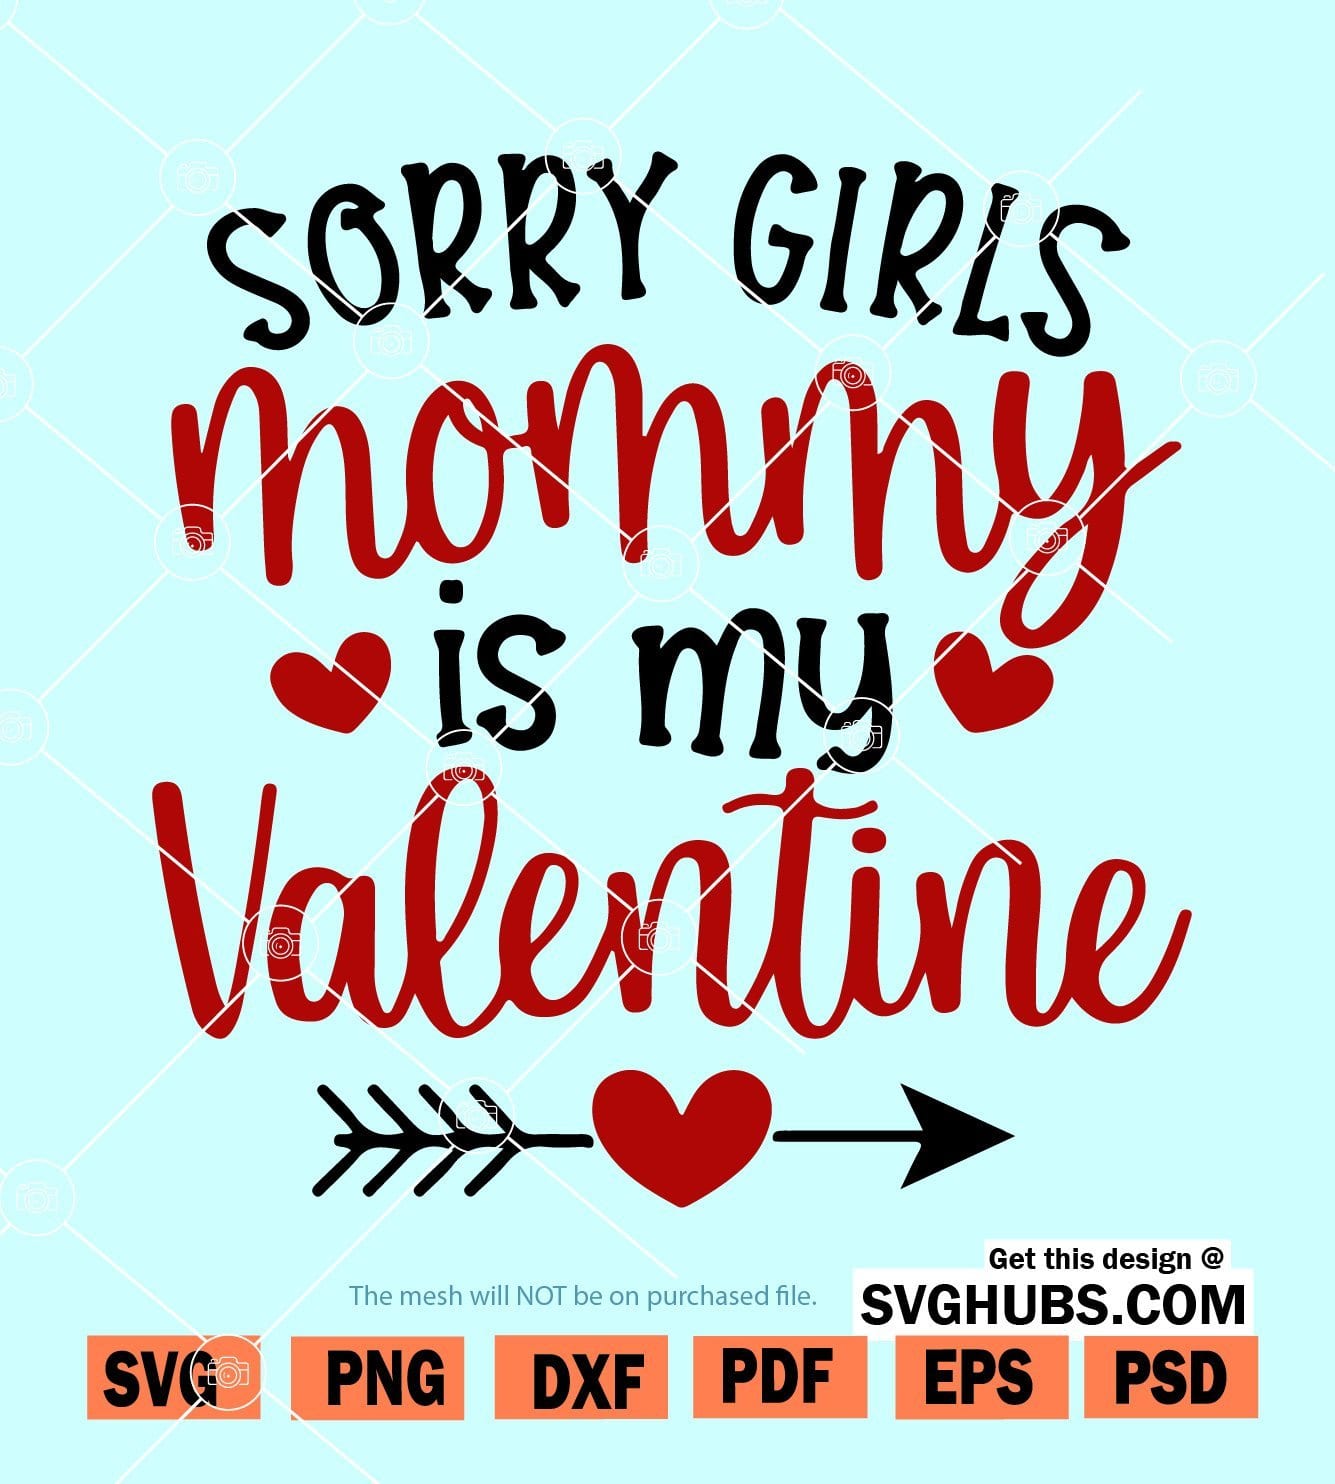 Sorry girls mommy is my valentine SVG, Valentines Boy SVG, Boy